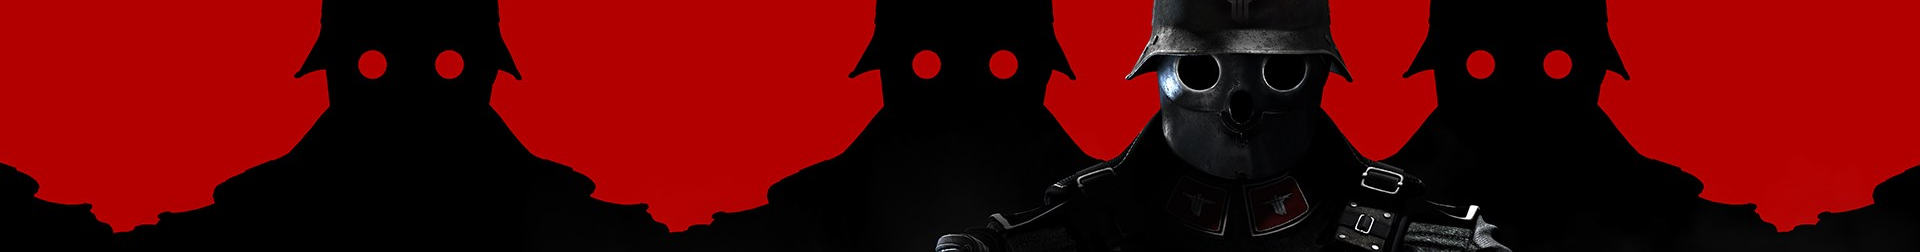 Wolfenstein: The New Order Banner